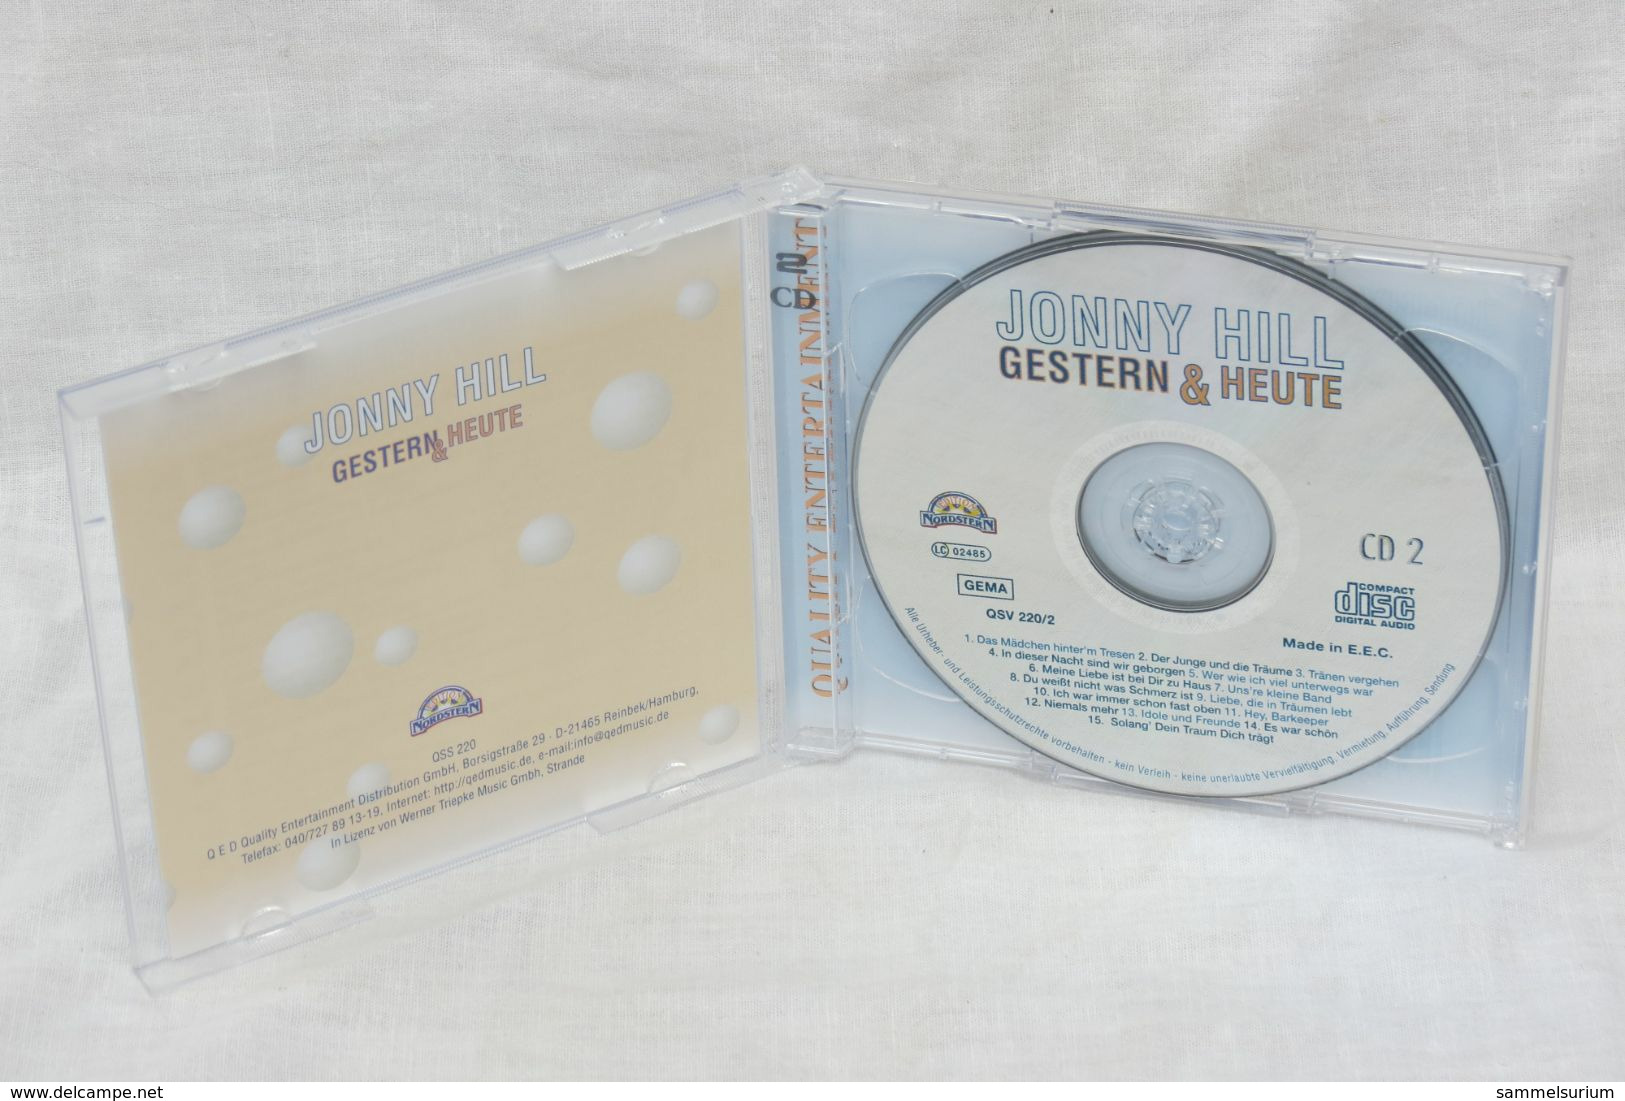 2 CDs "Jonny Hill" Gestern & Heute - Other - German Music